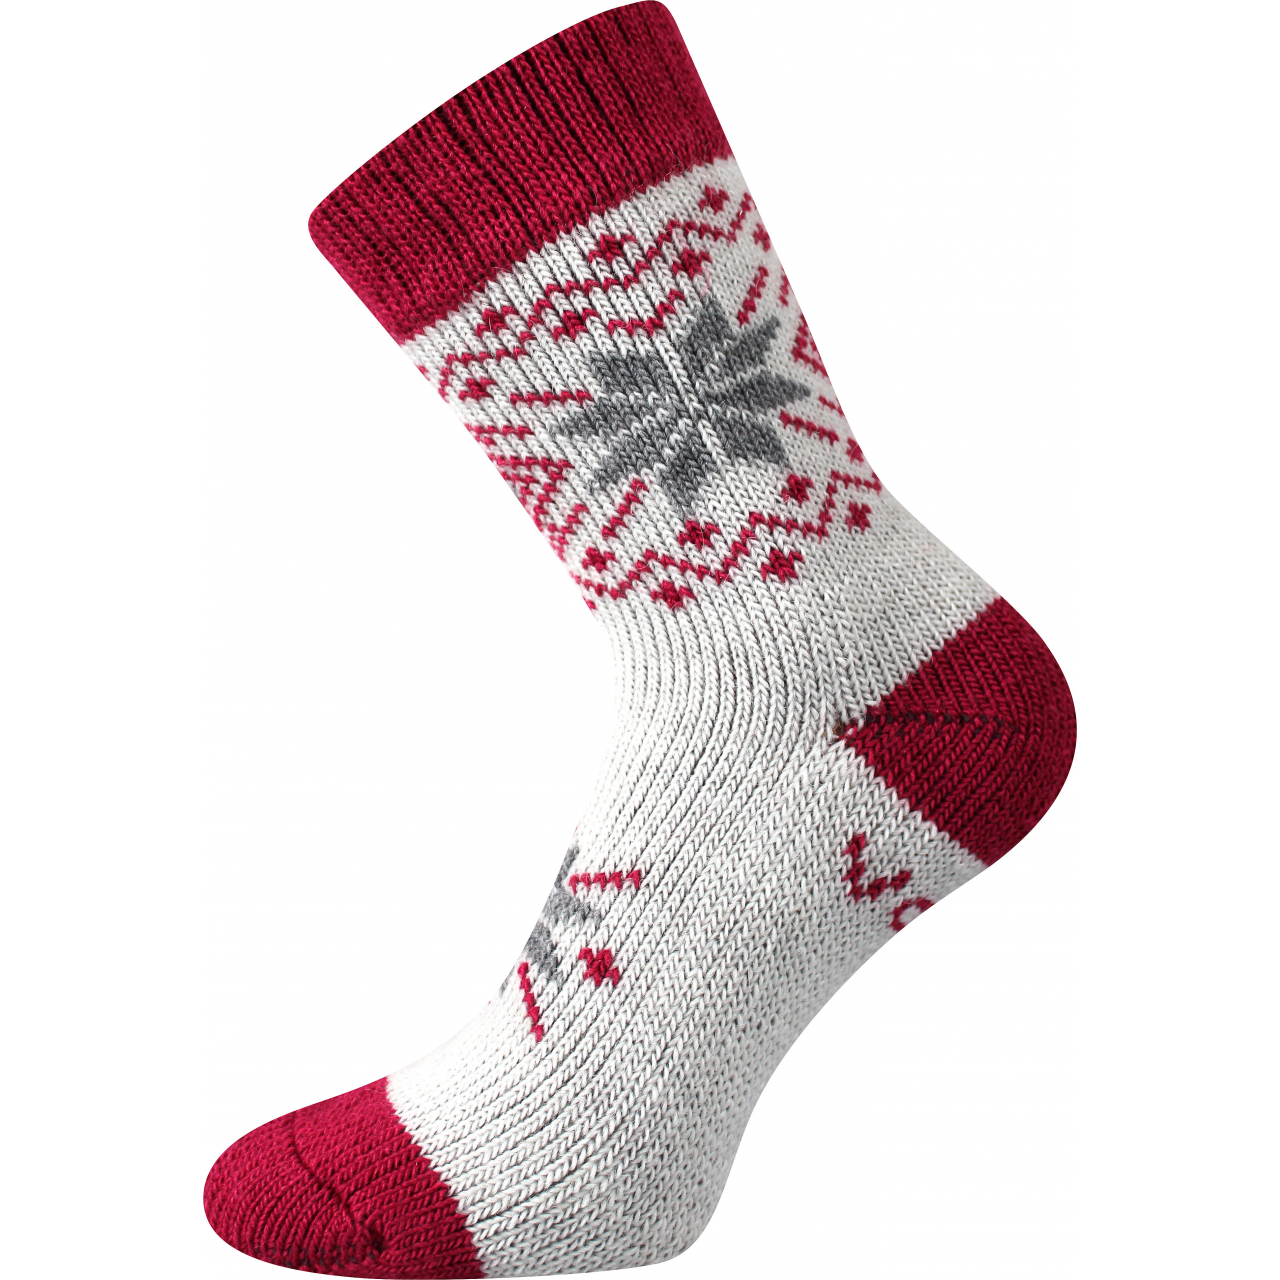 Ponožky unisex vlněné Voxx Alta - bílé-červené, 39-42